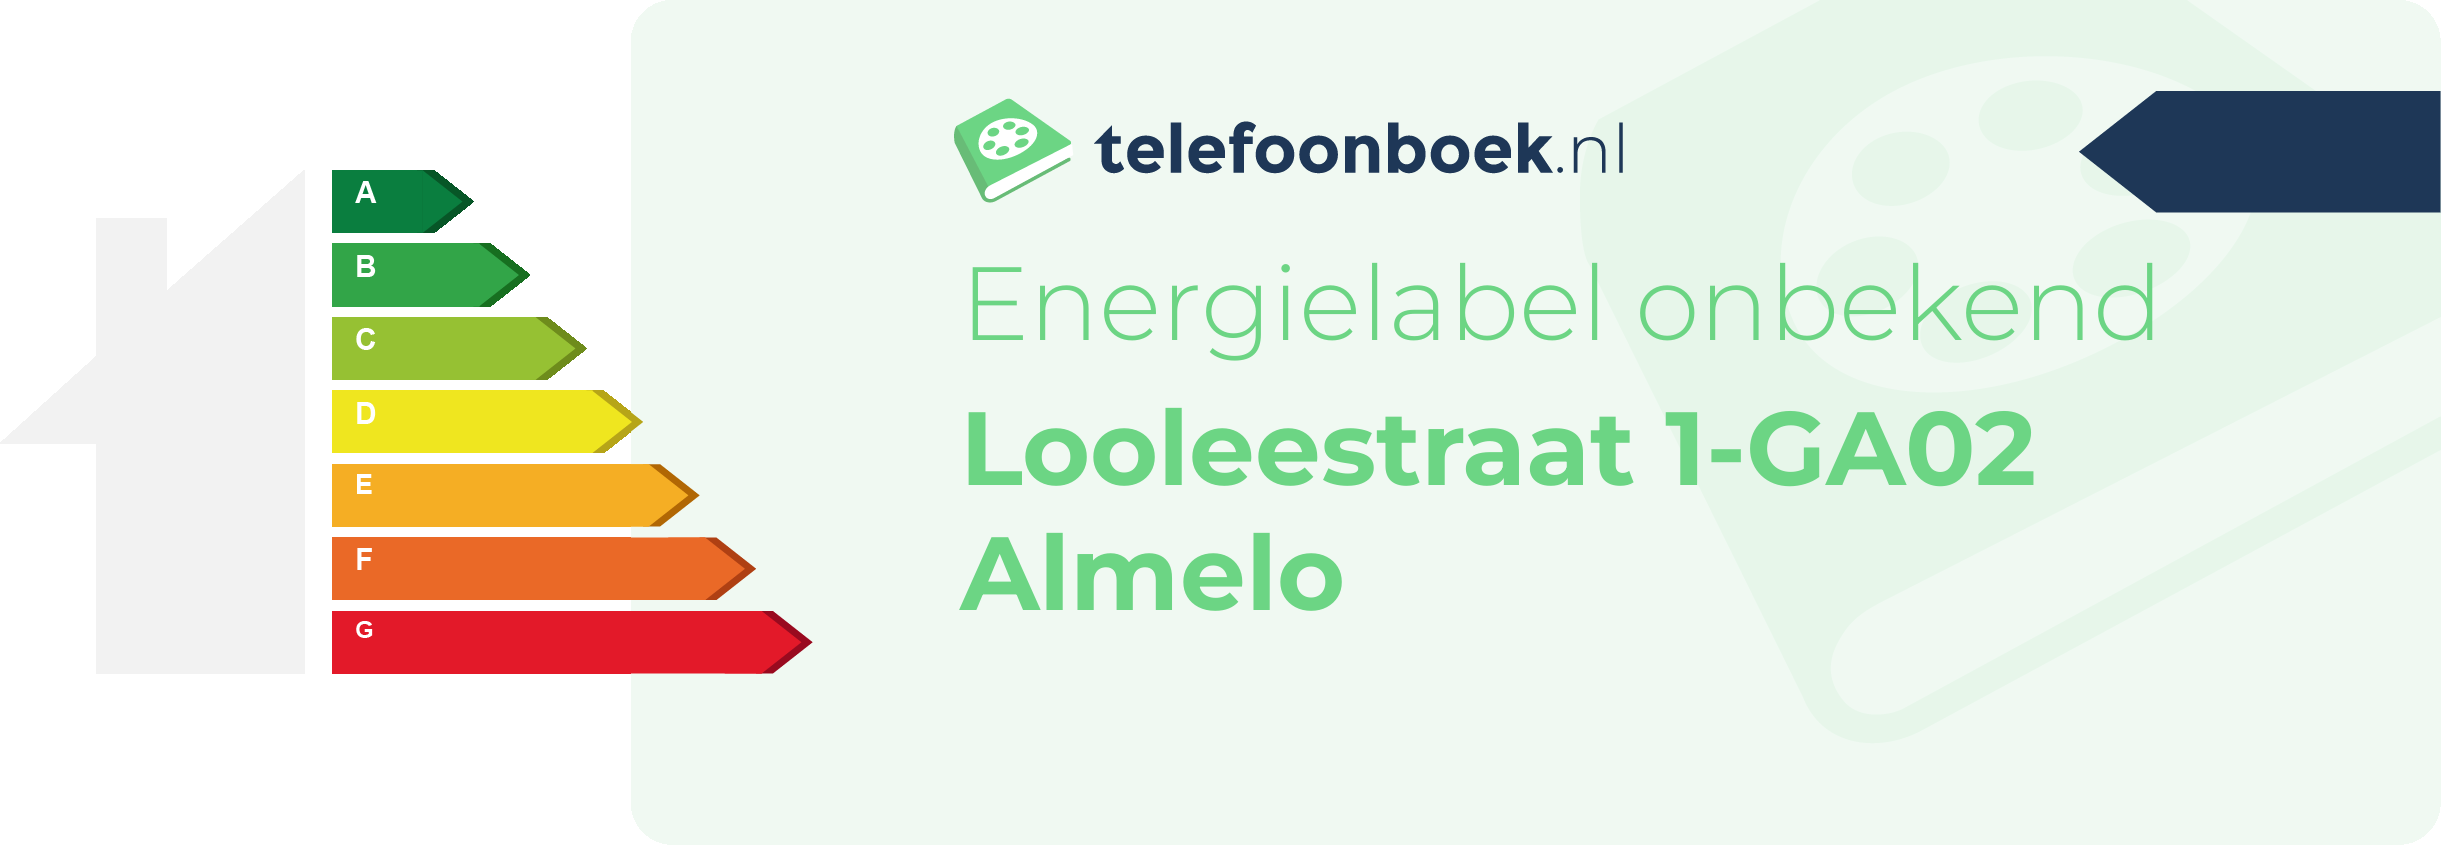 Energielabel Looleestraat 1-GA02 Almelo